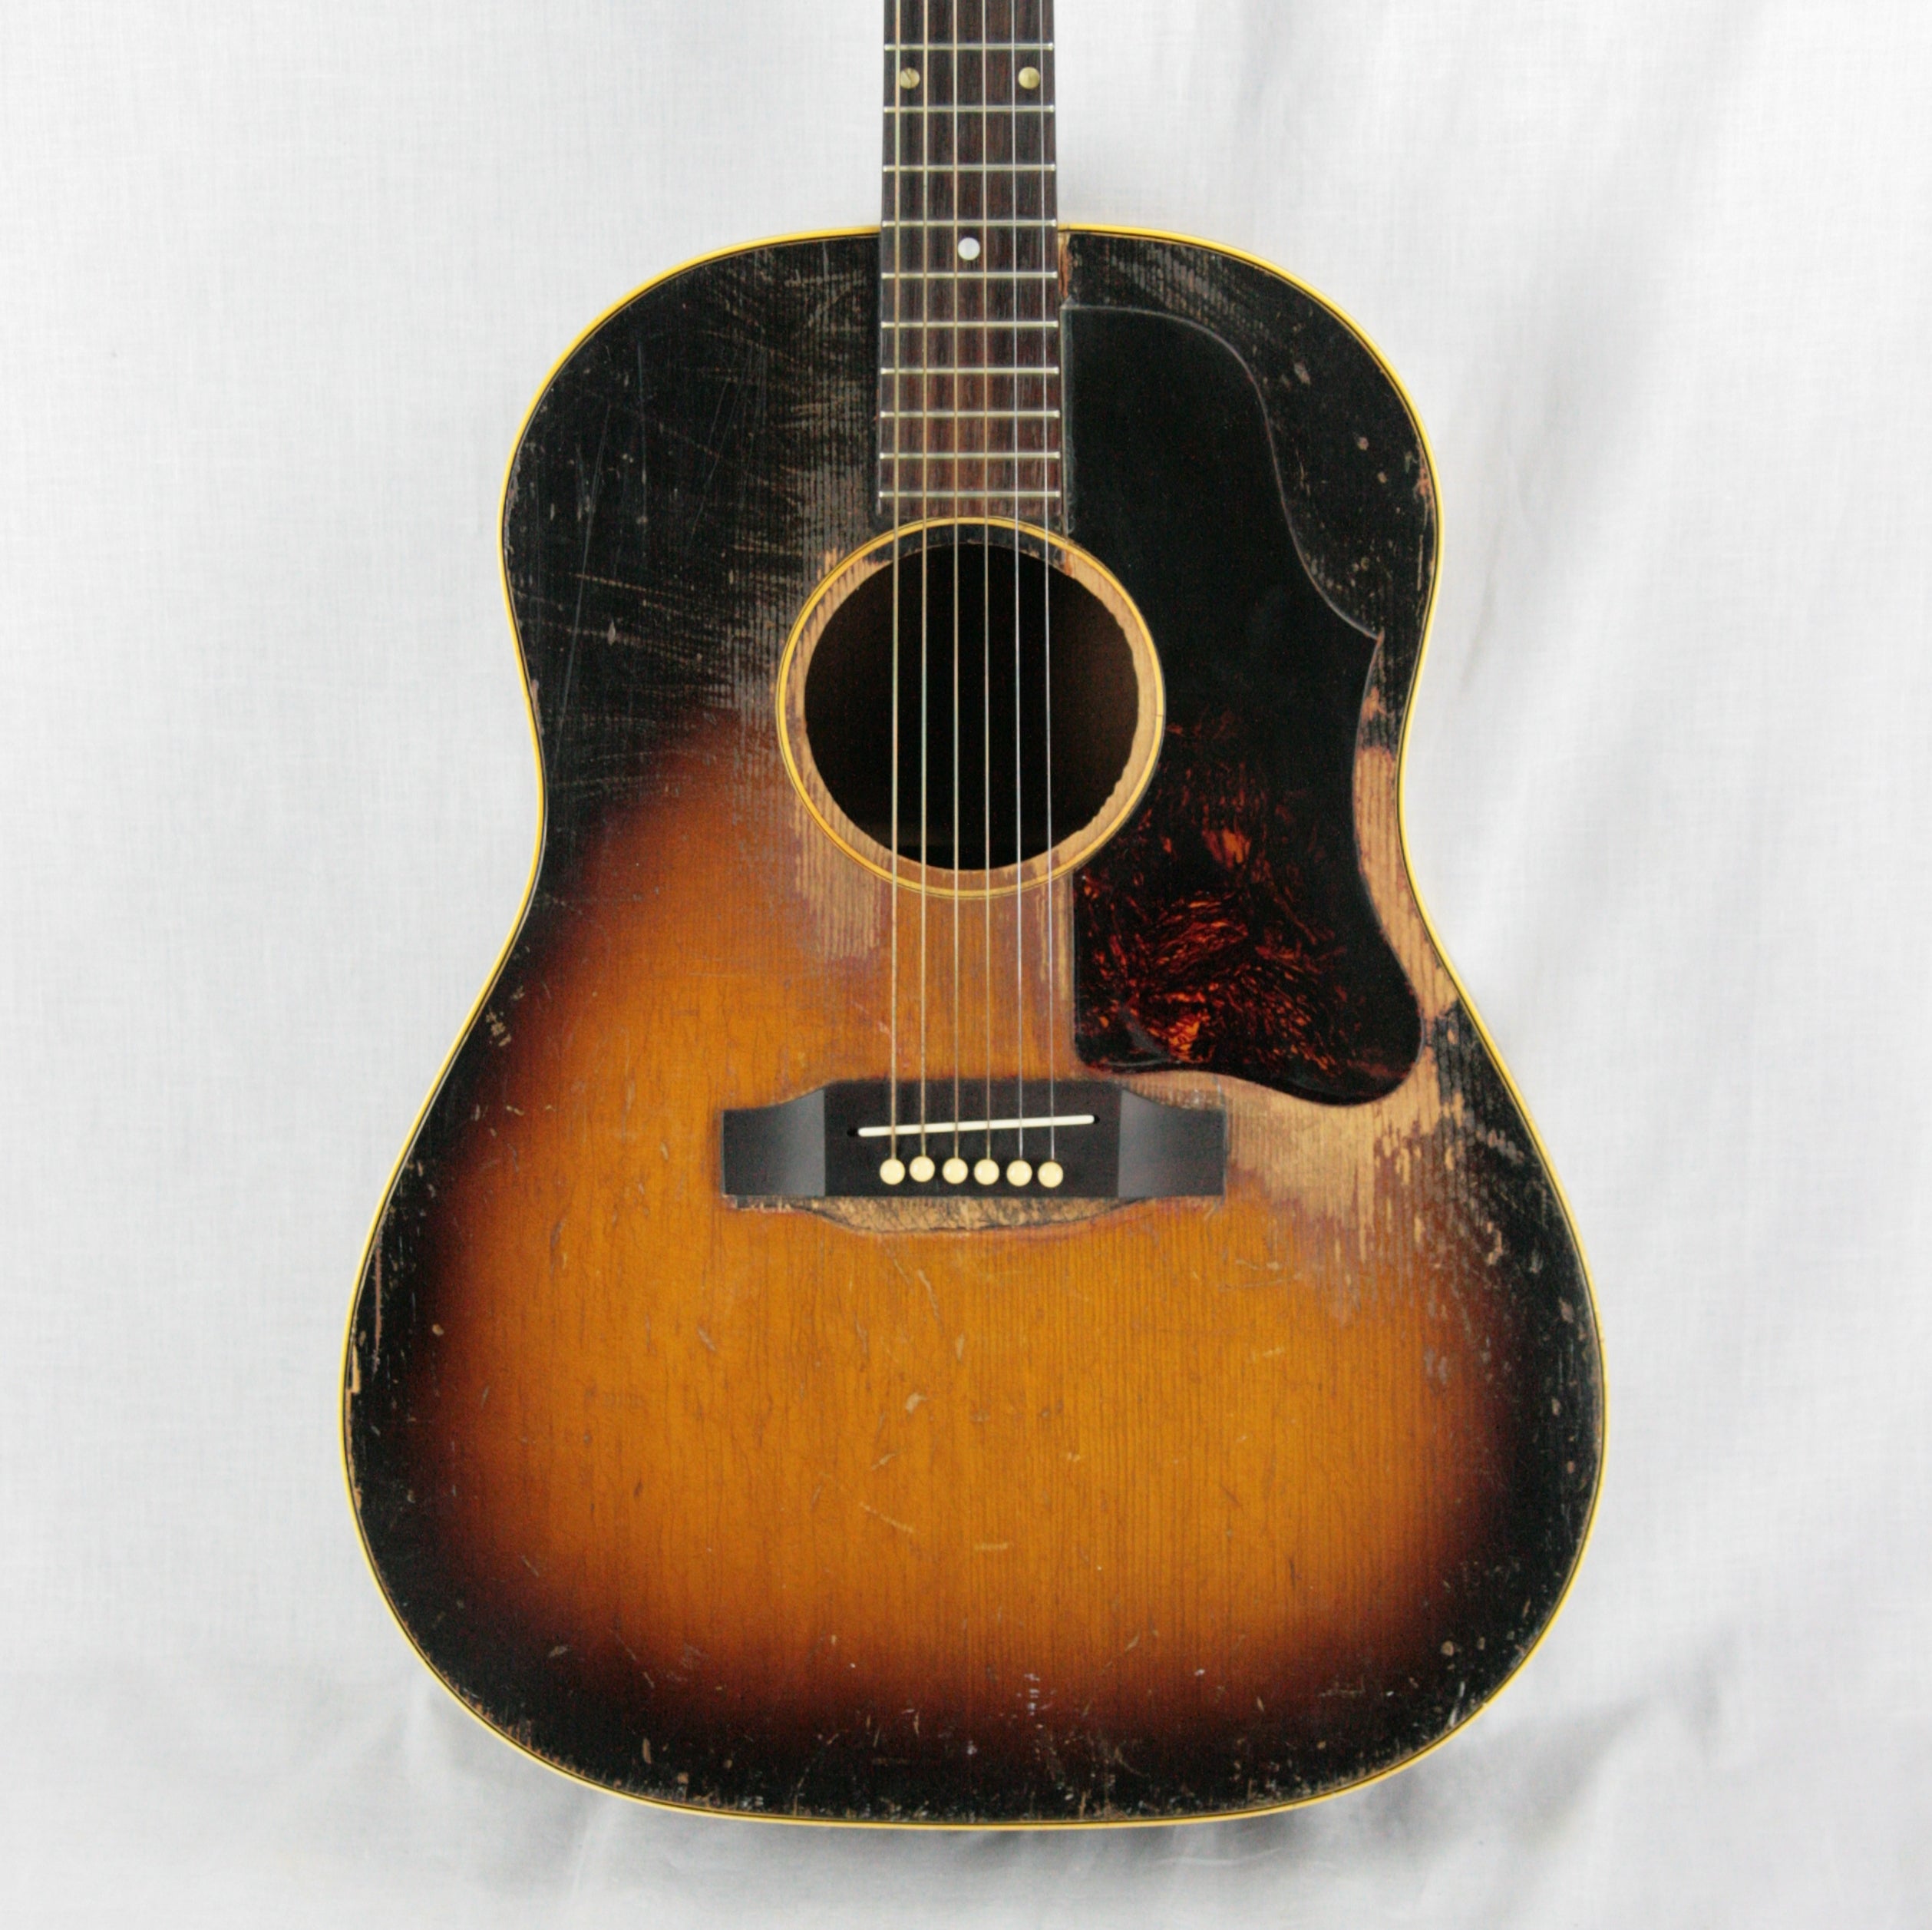 1950's Gibson J-45 well worn sunburst finish